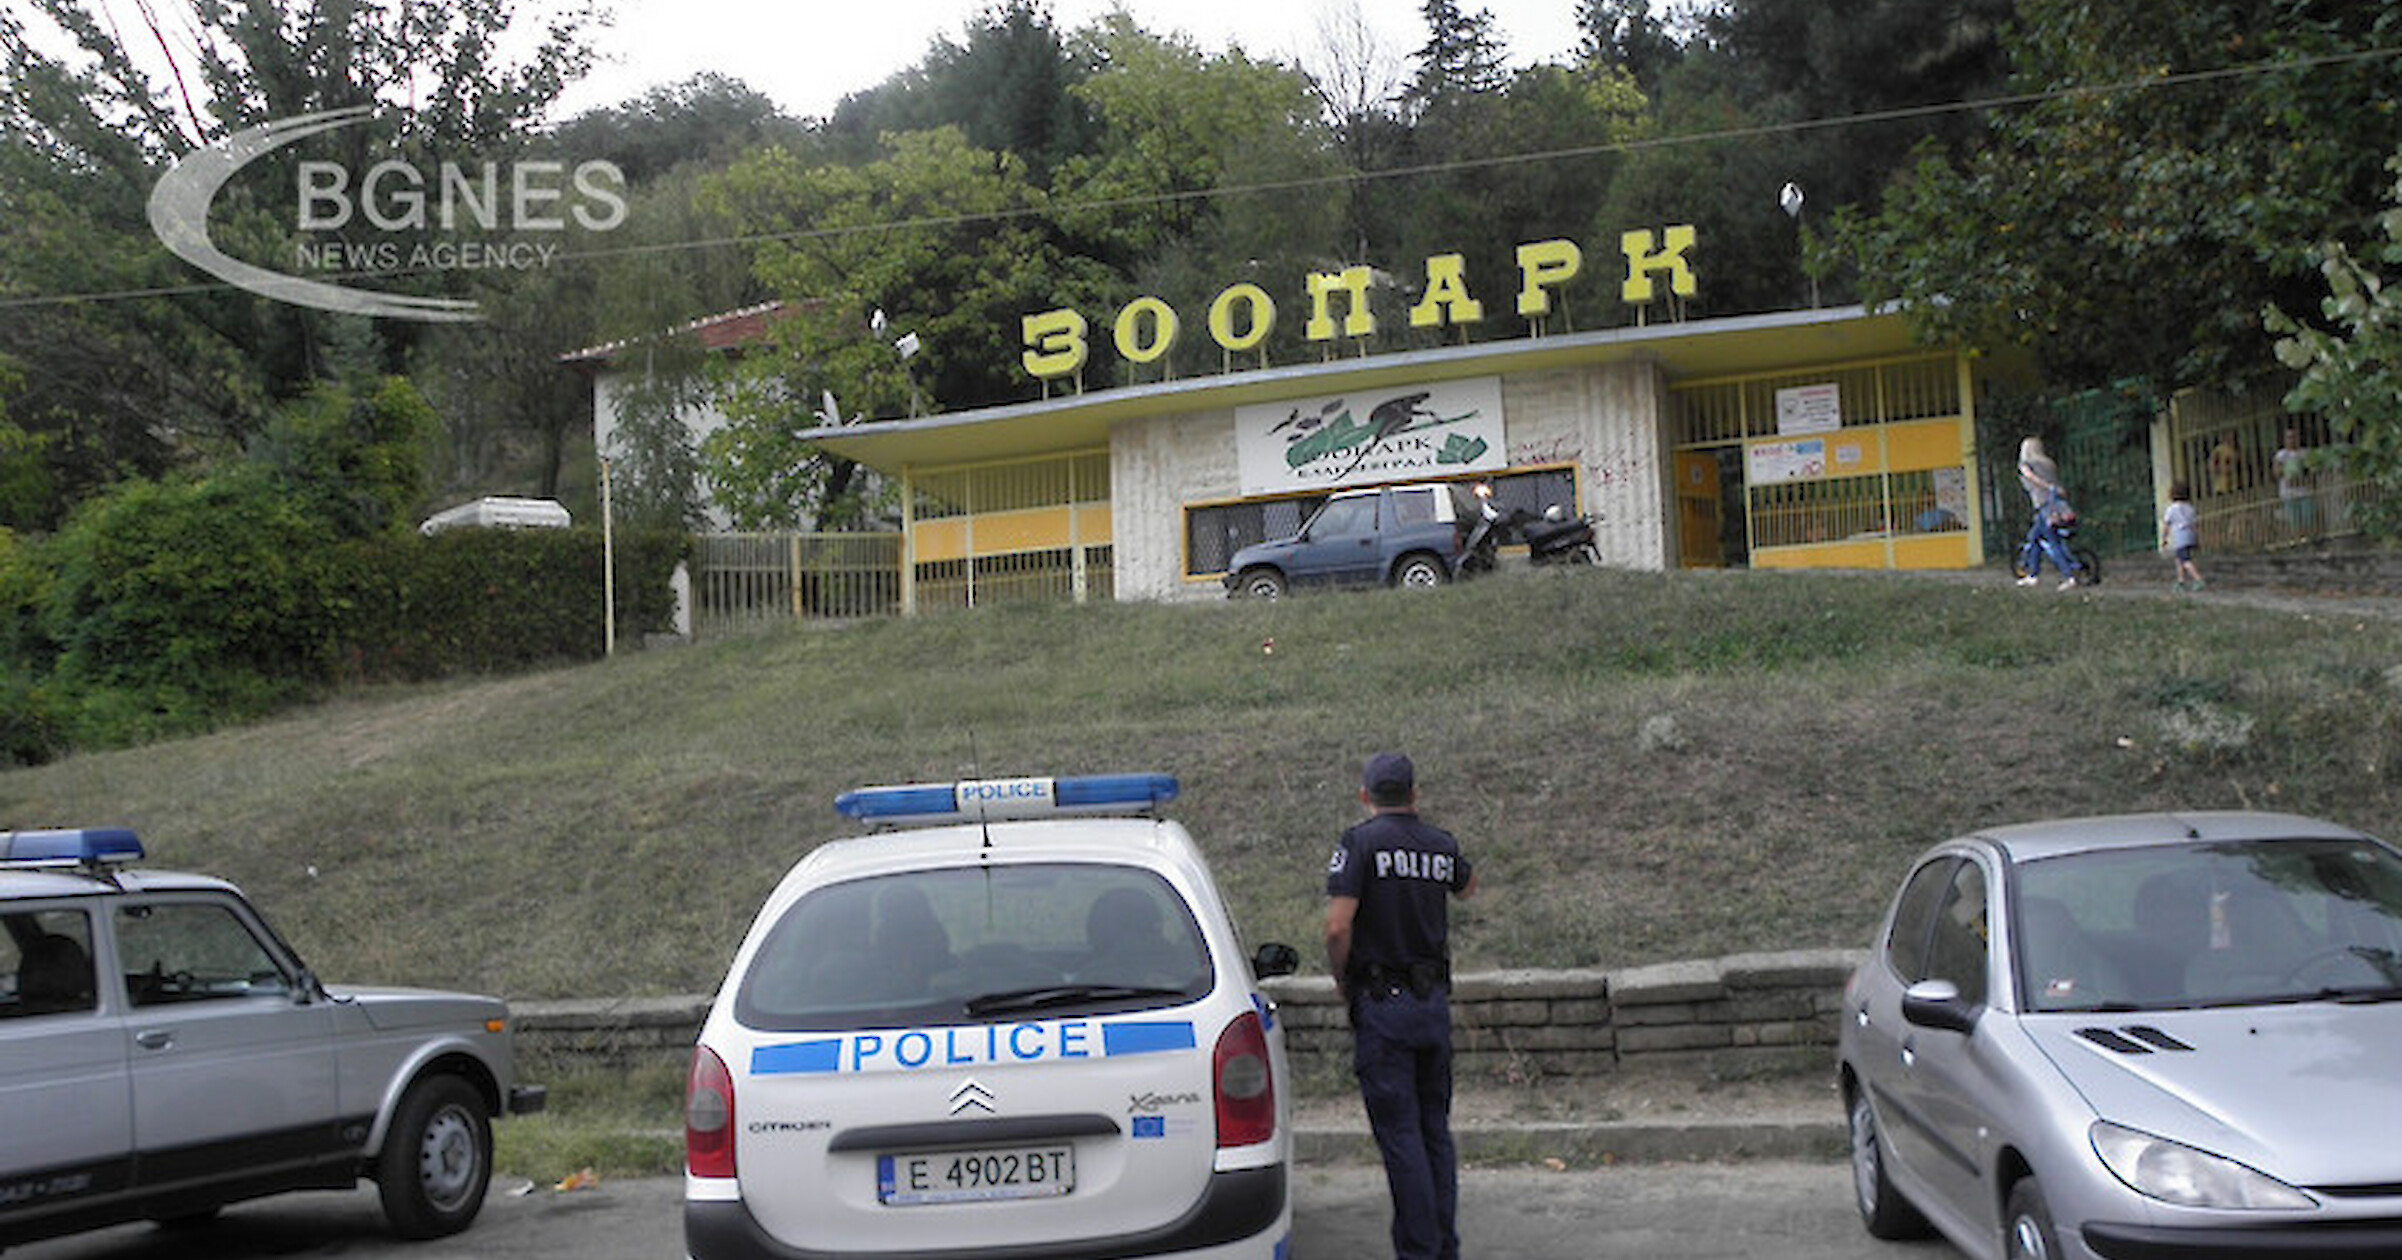 9 сърни са били отровени в зоопарка в Благоевград 5